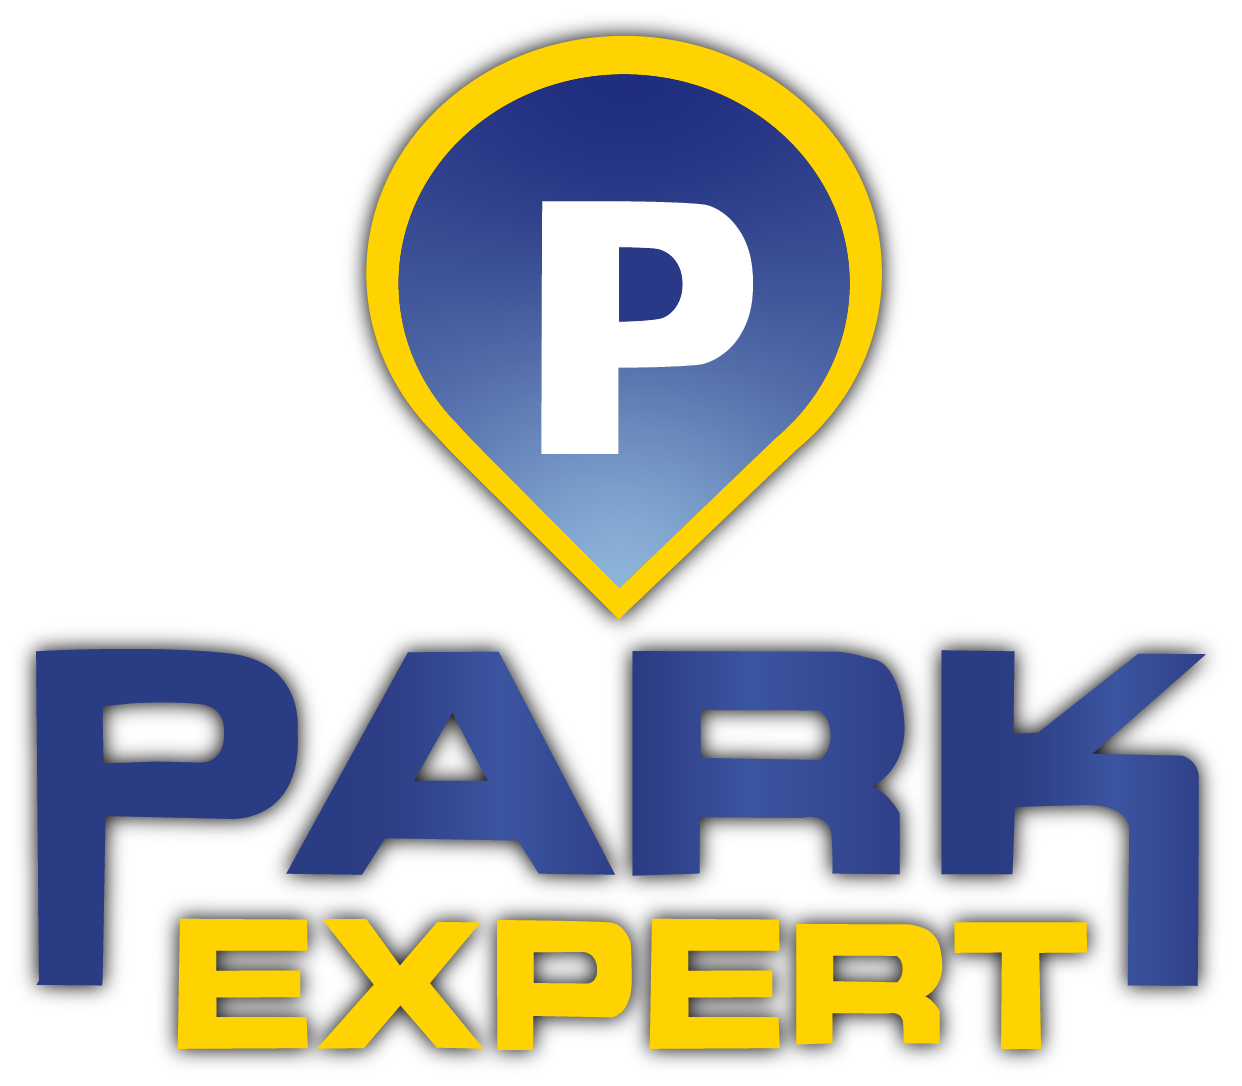 Parkexpert